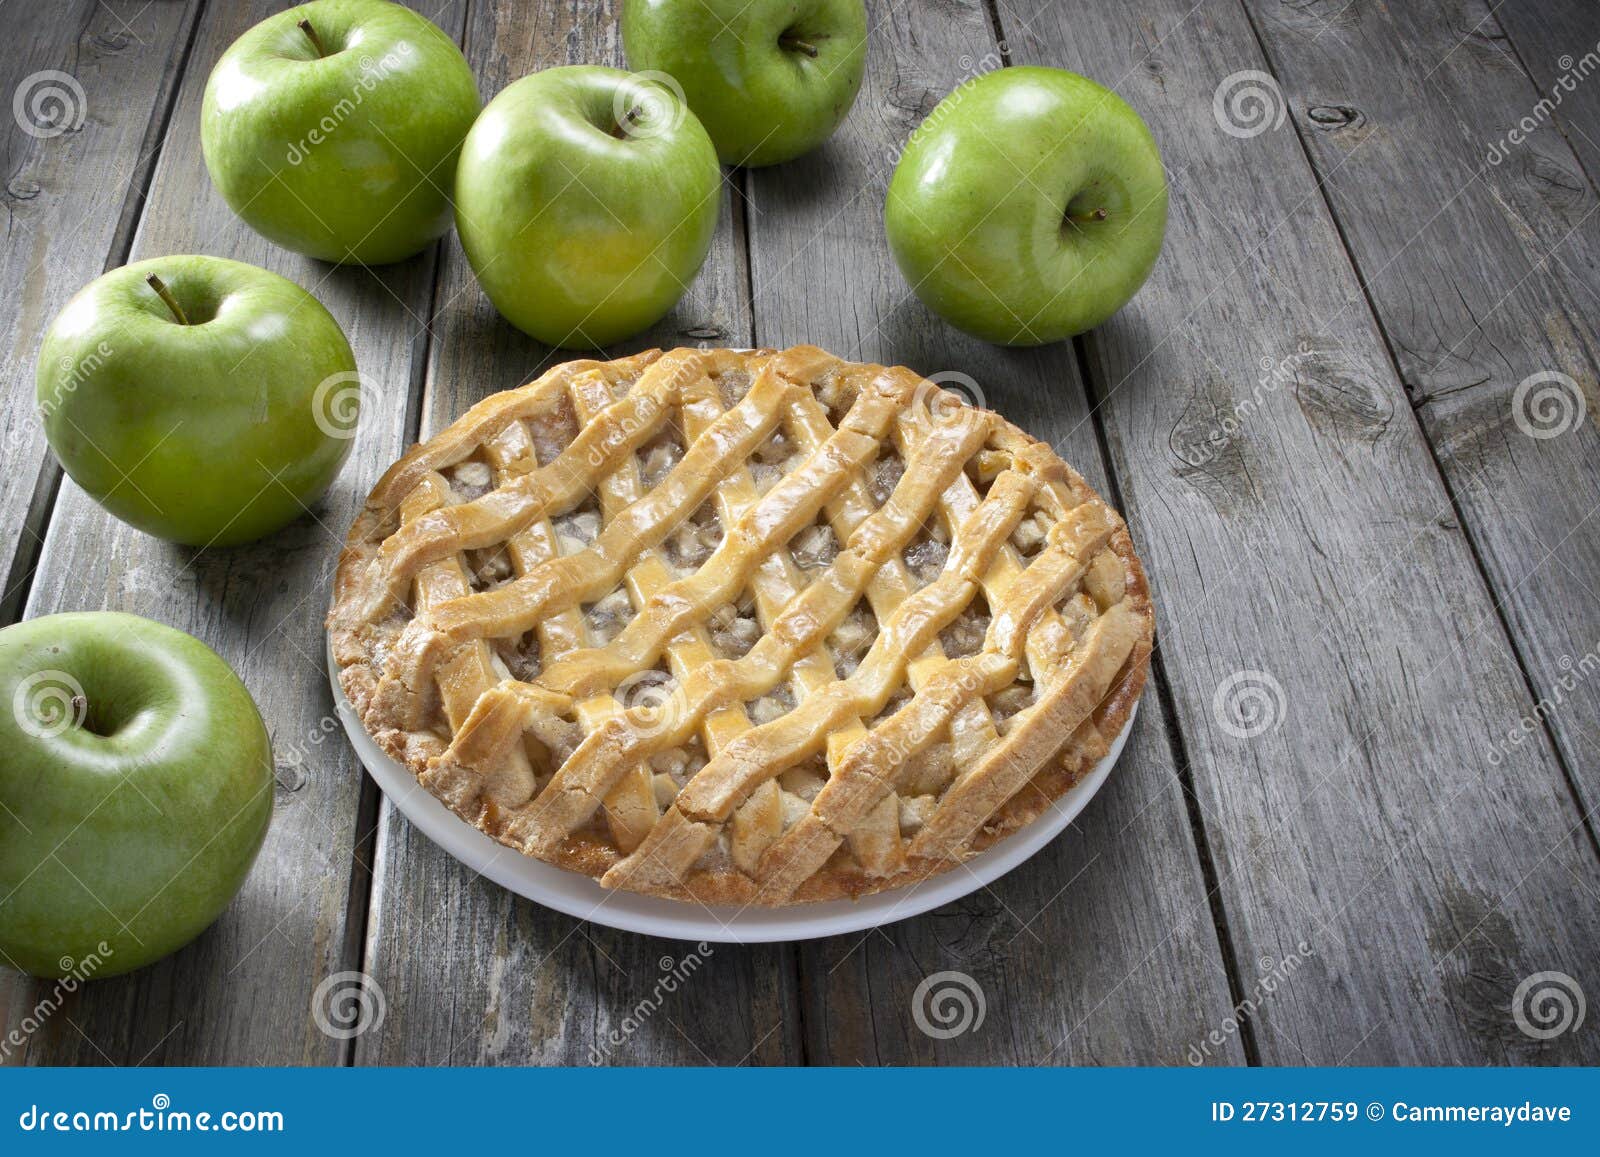 apple pie dessert food